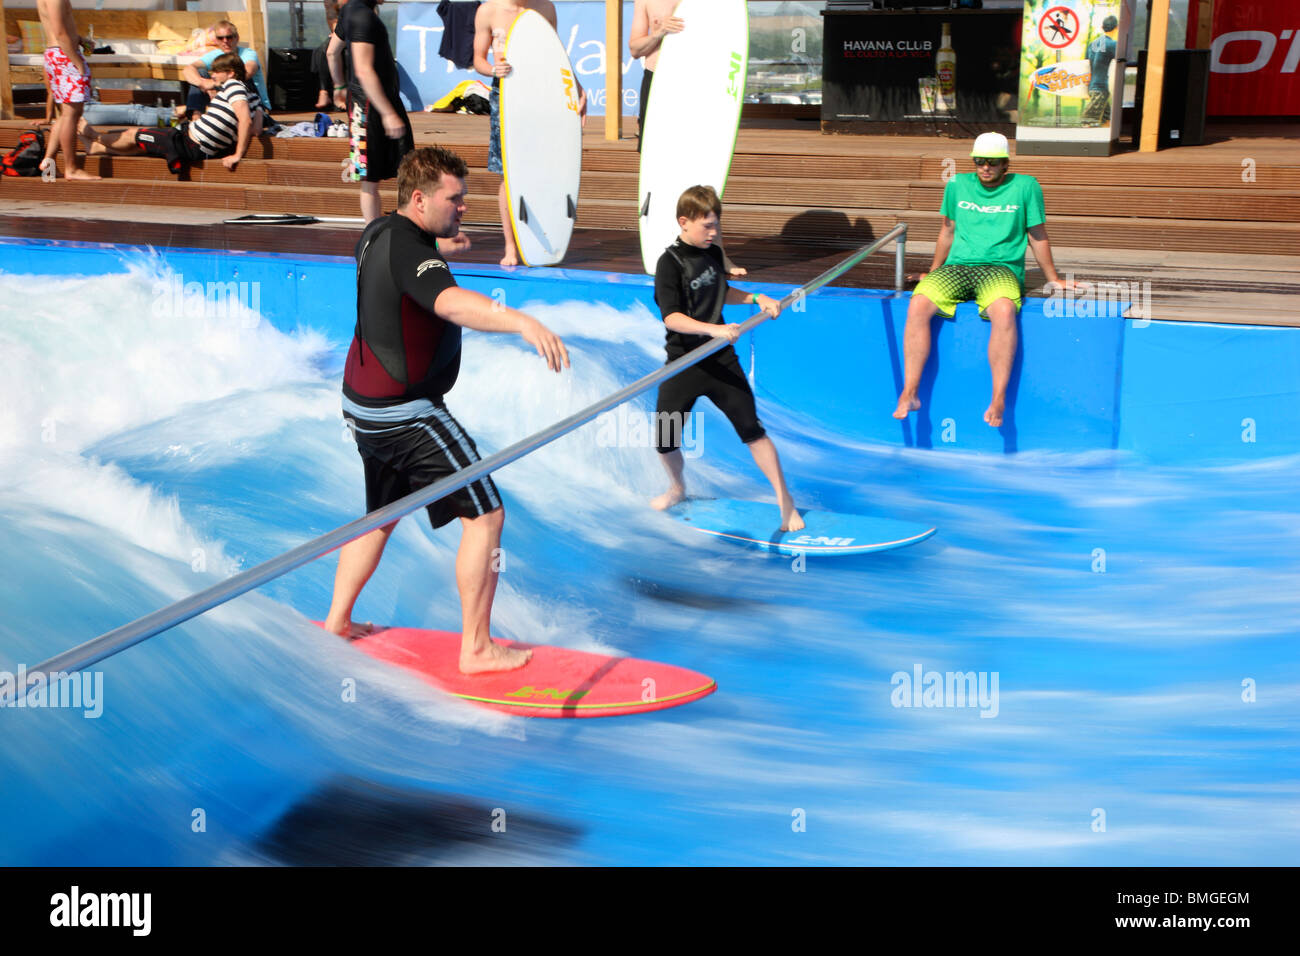 L'onda artificiale onde da surf in una piscina. Le persone imparano a navigare, buon surfer può mostrare le loro abilità. Foto Stock